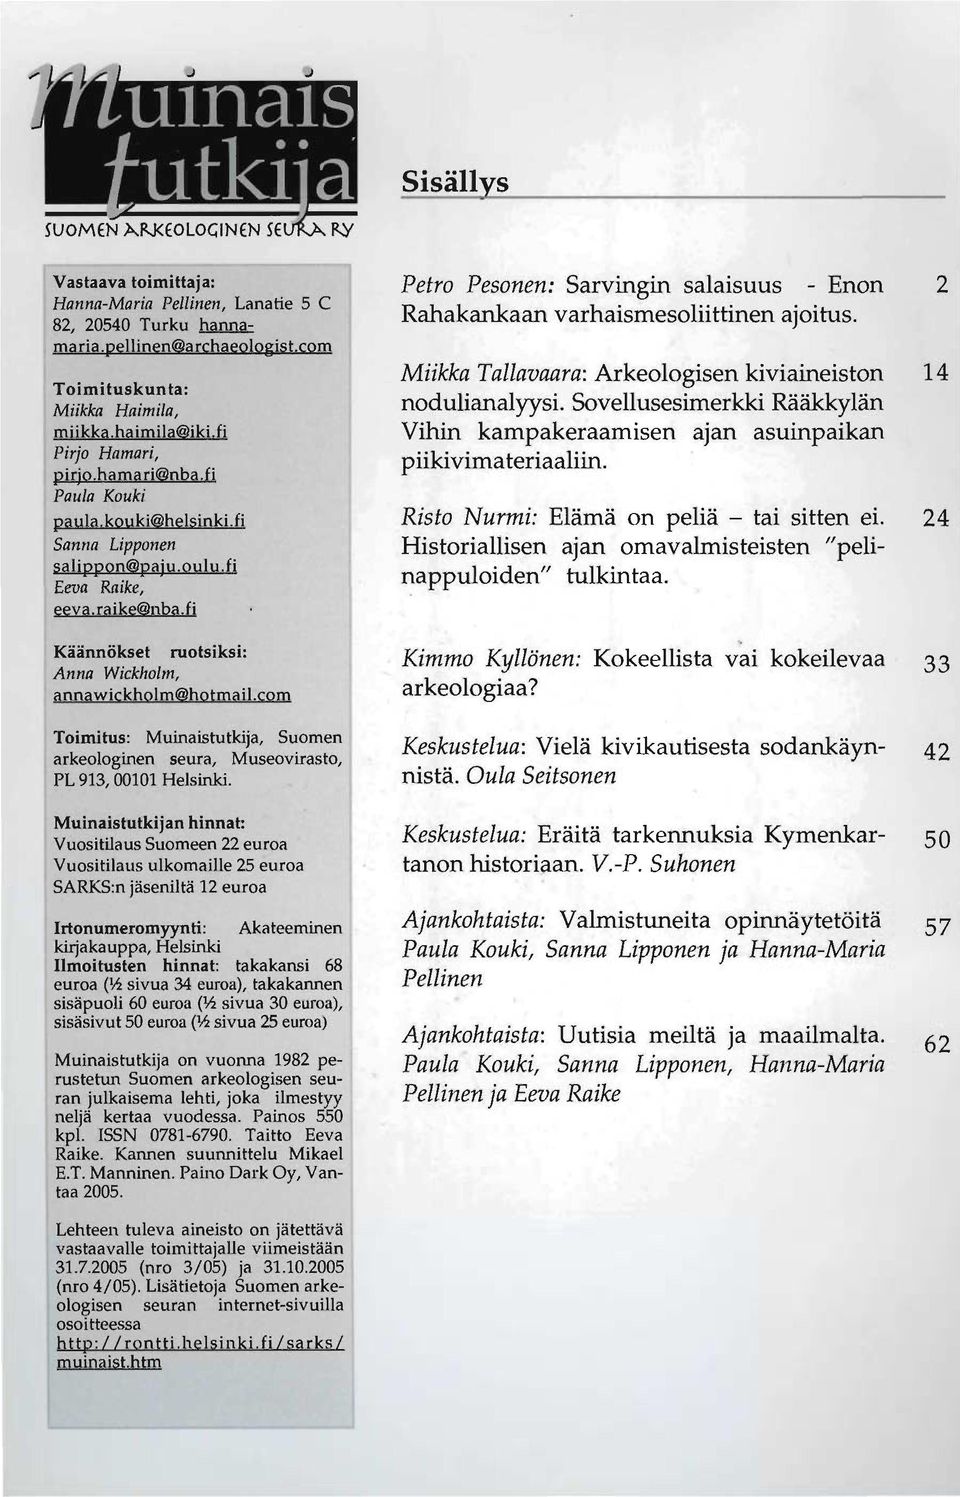 com Toimitus: Muinaistutkija, Suomen arkeologinen seura, Museovirasto, PL 913, 00101 Helsinki.